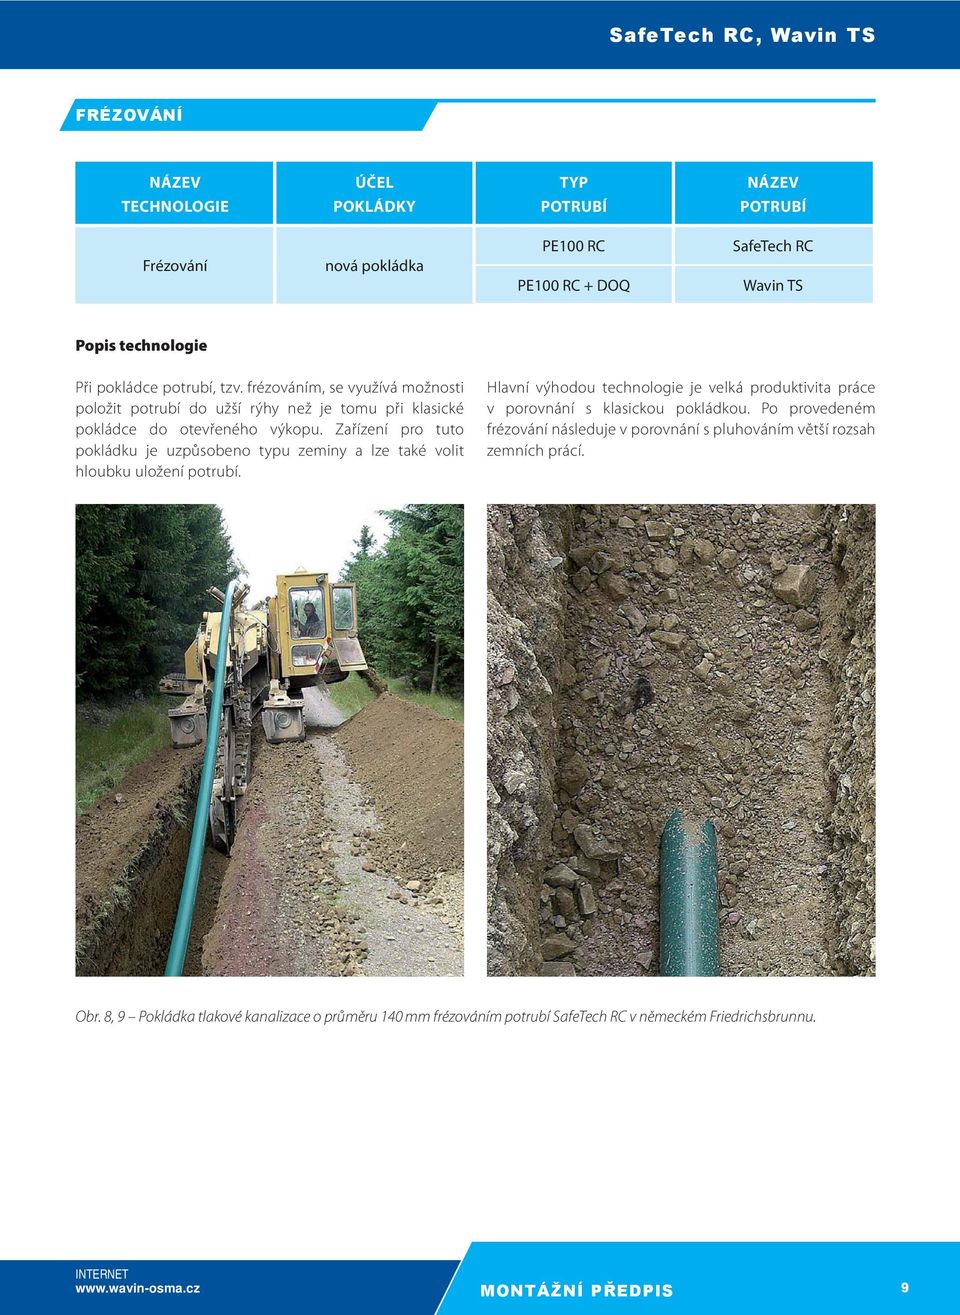 Zařízení pro tuto pokládku je uzpůsobeno typu zeminy a lze také volit hloubku uložení potrubí.